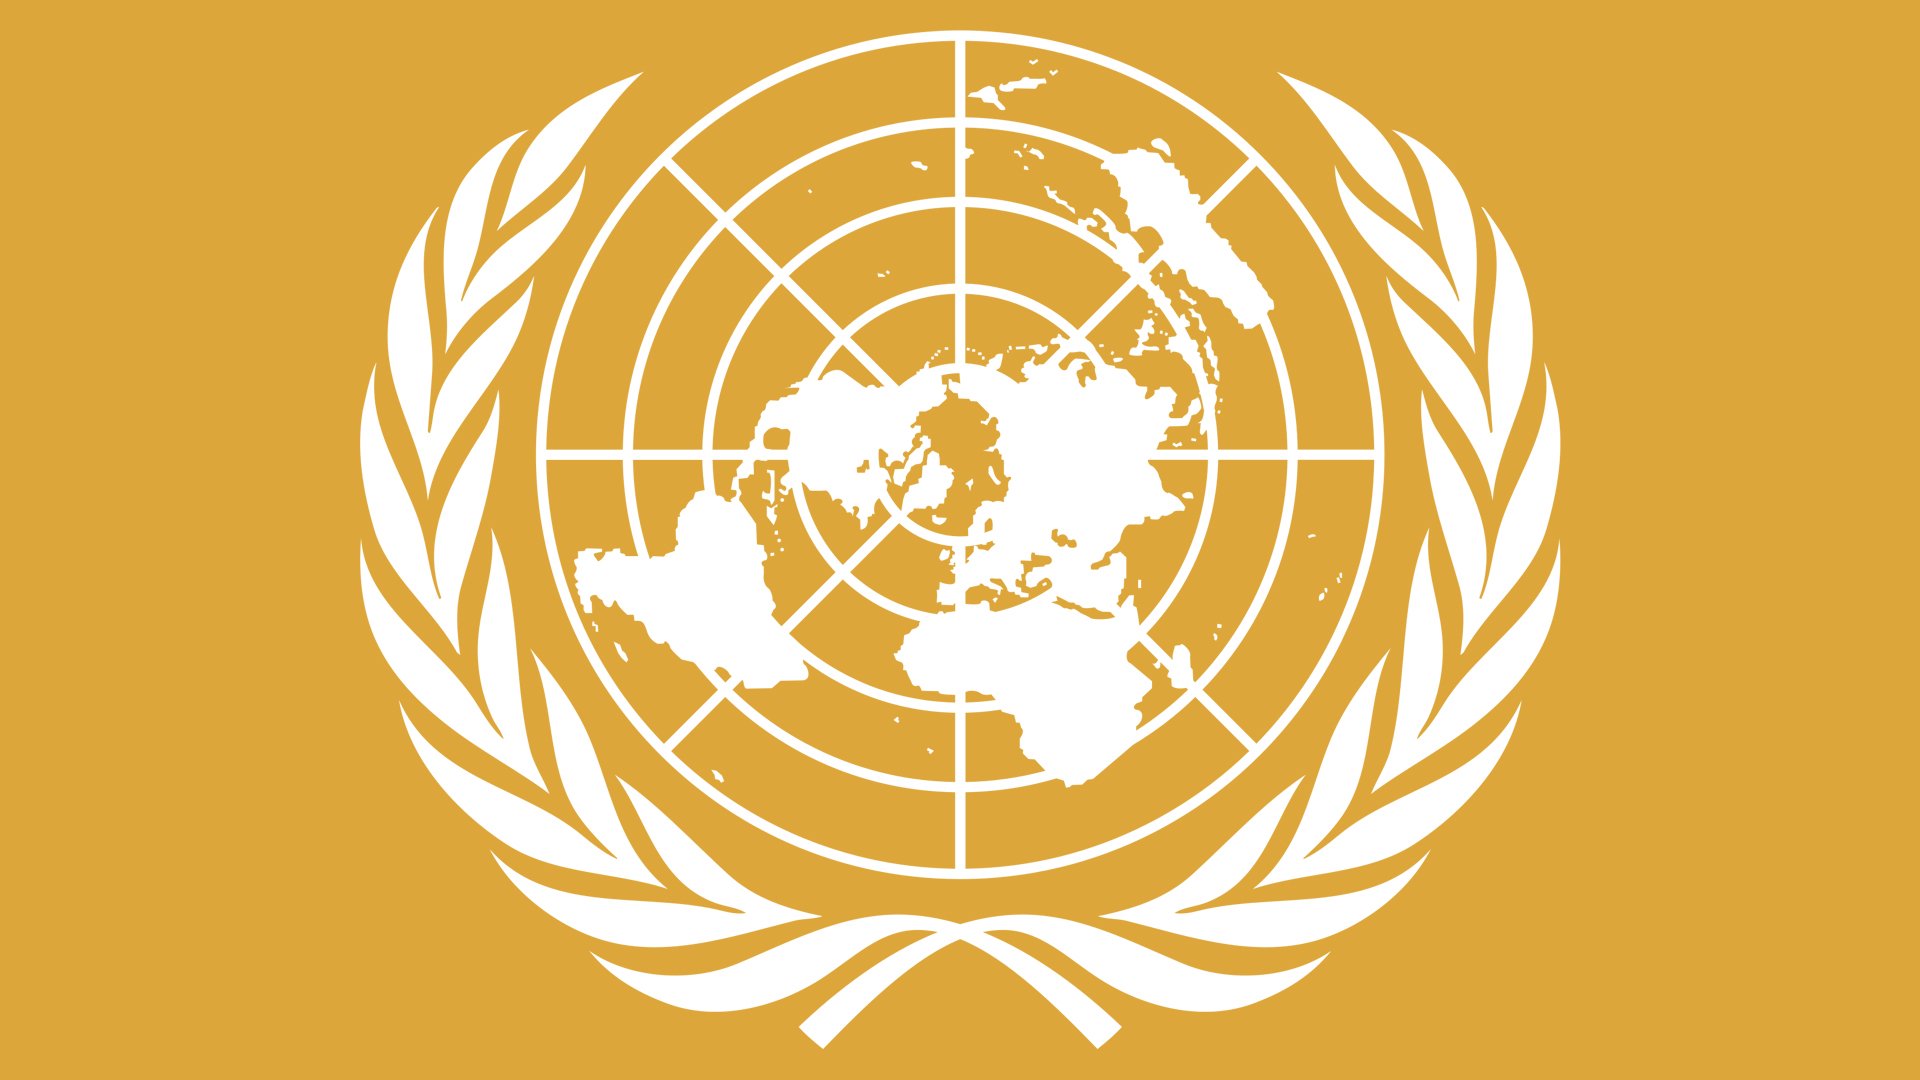 United-Nations-Emblem